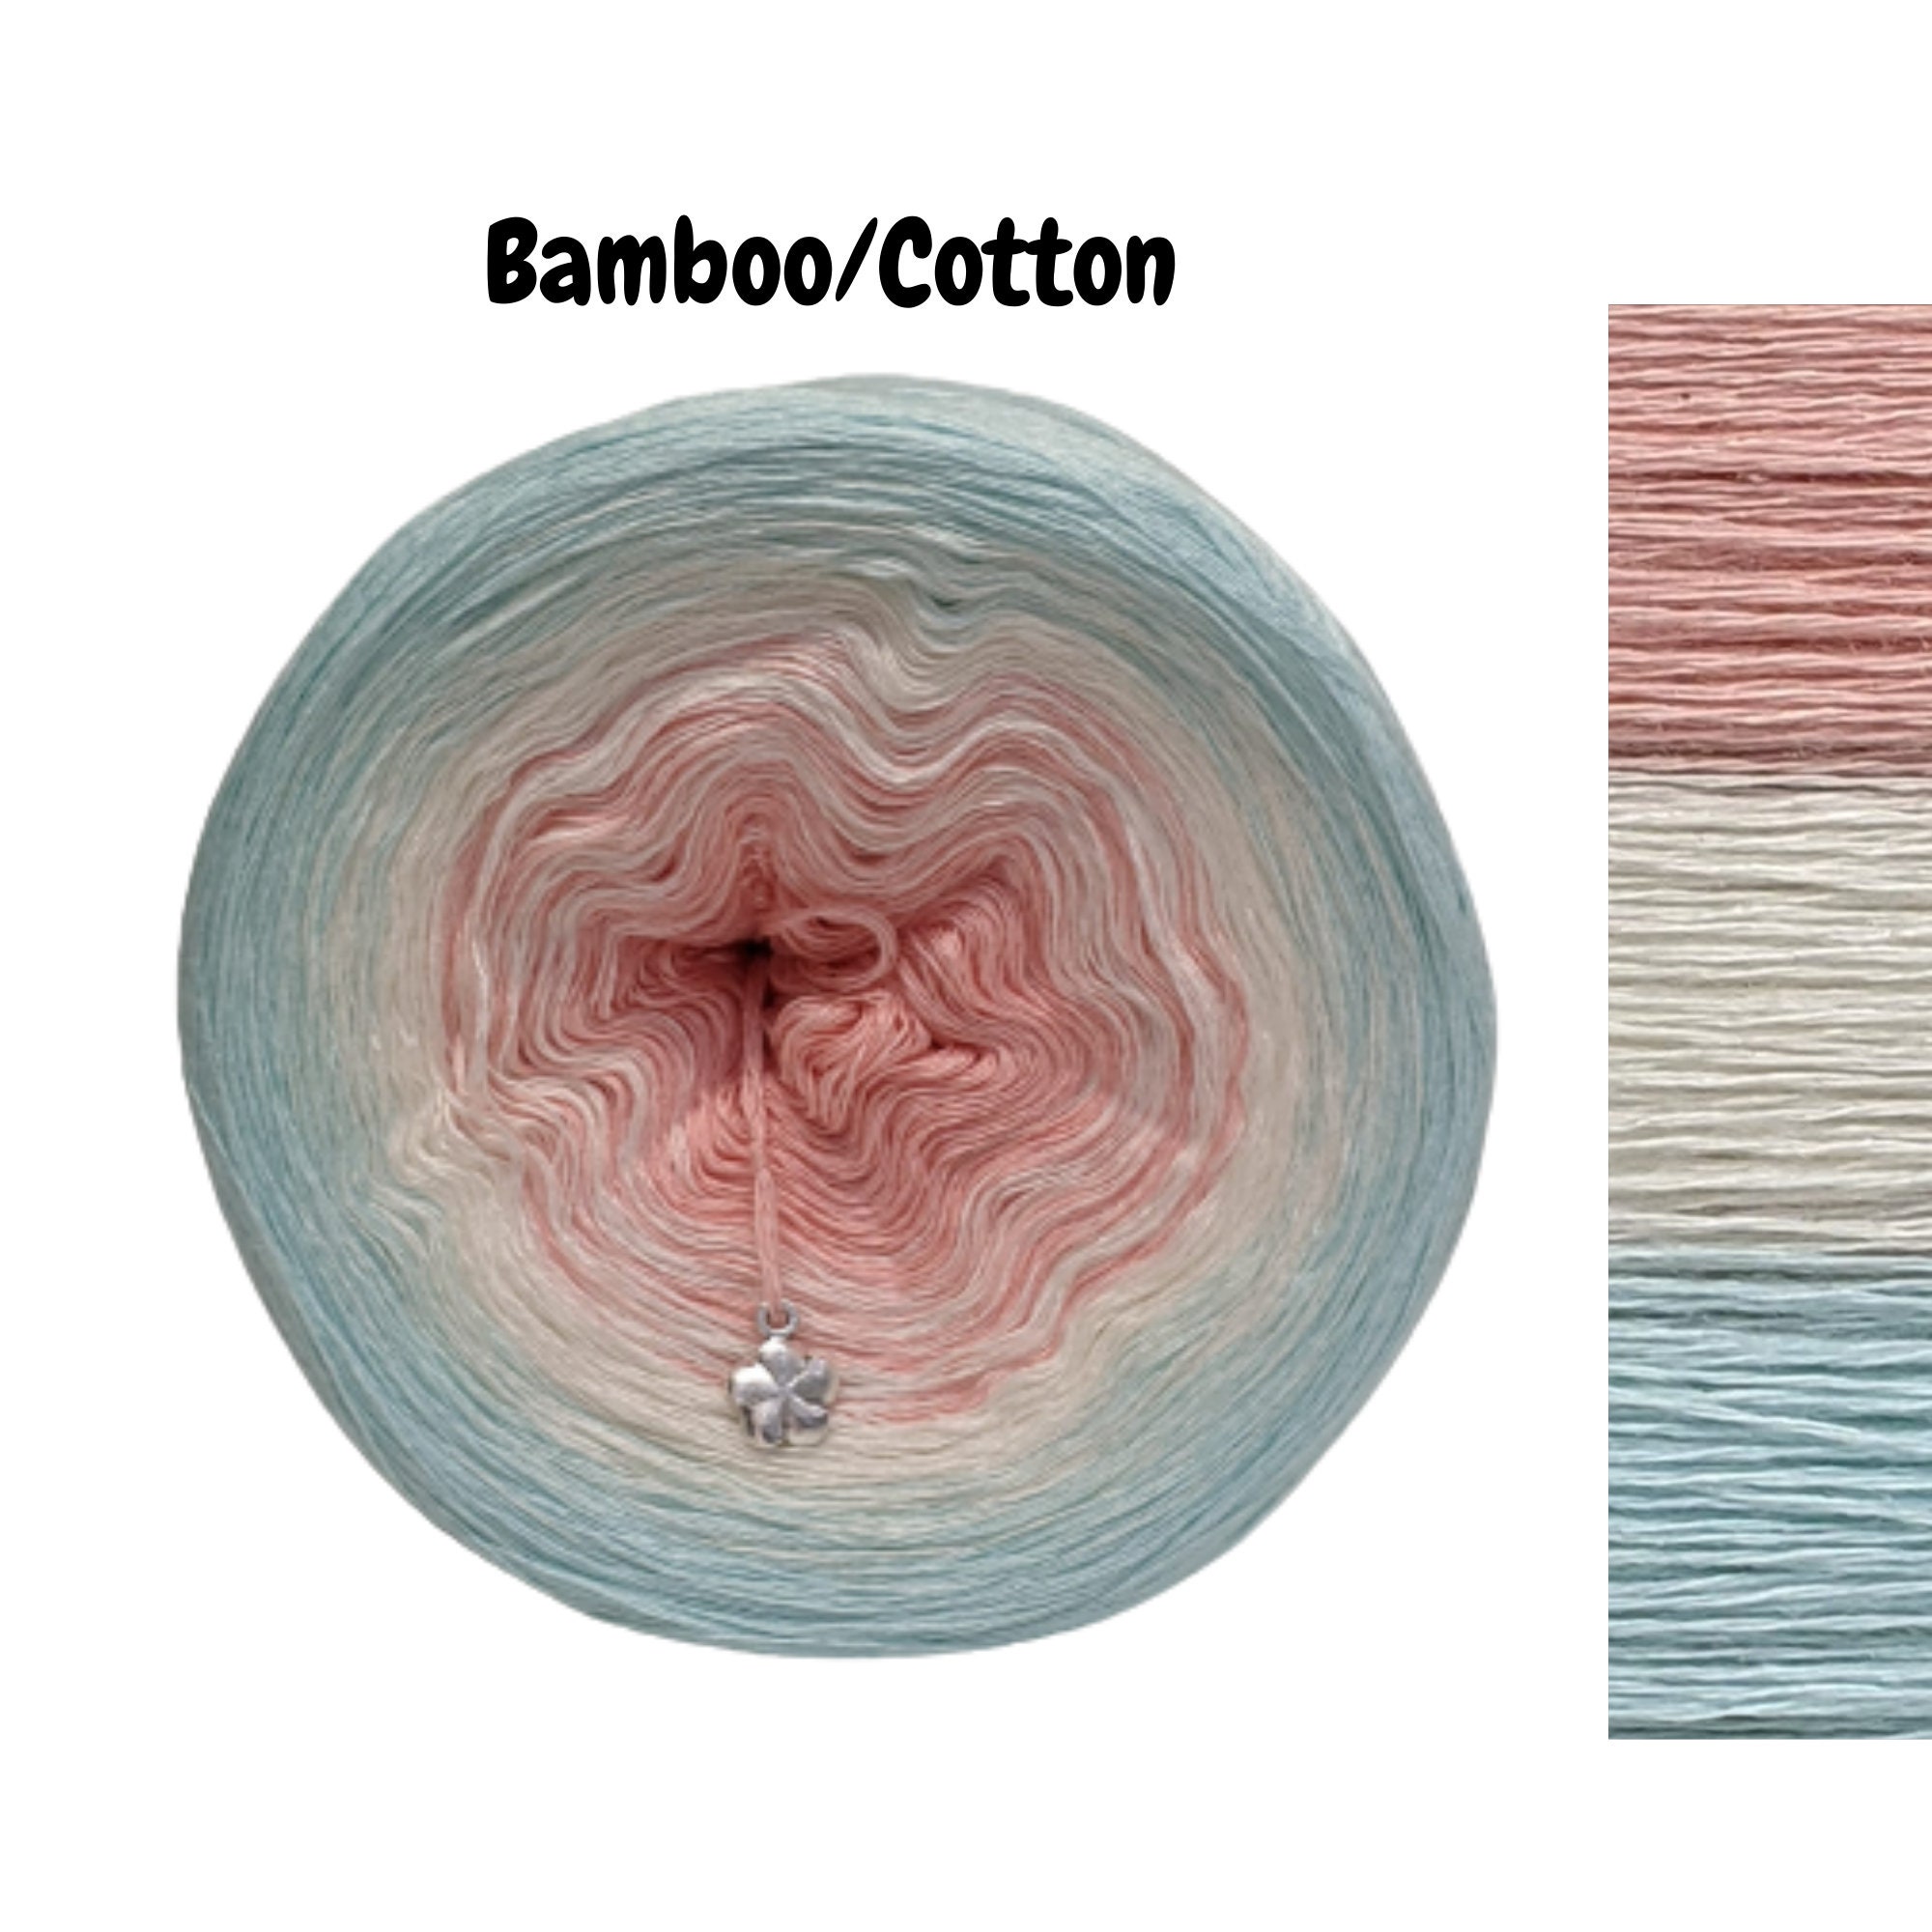 Cotton Bamboo Yarn Fibra Natura Bamboo Jazz 50g / 120mt / 132yards Cotton  Crochet Yarn Light Weigt Yarn Crochet Bamboo Yarn 